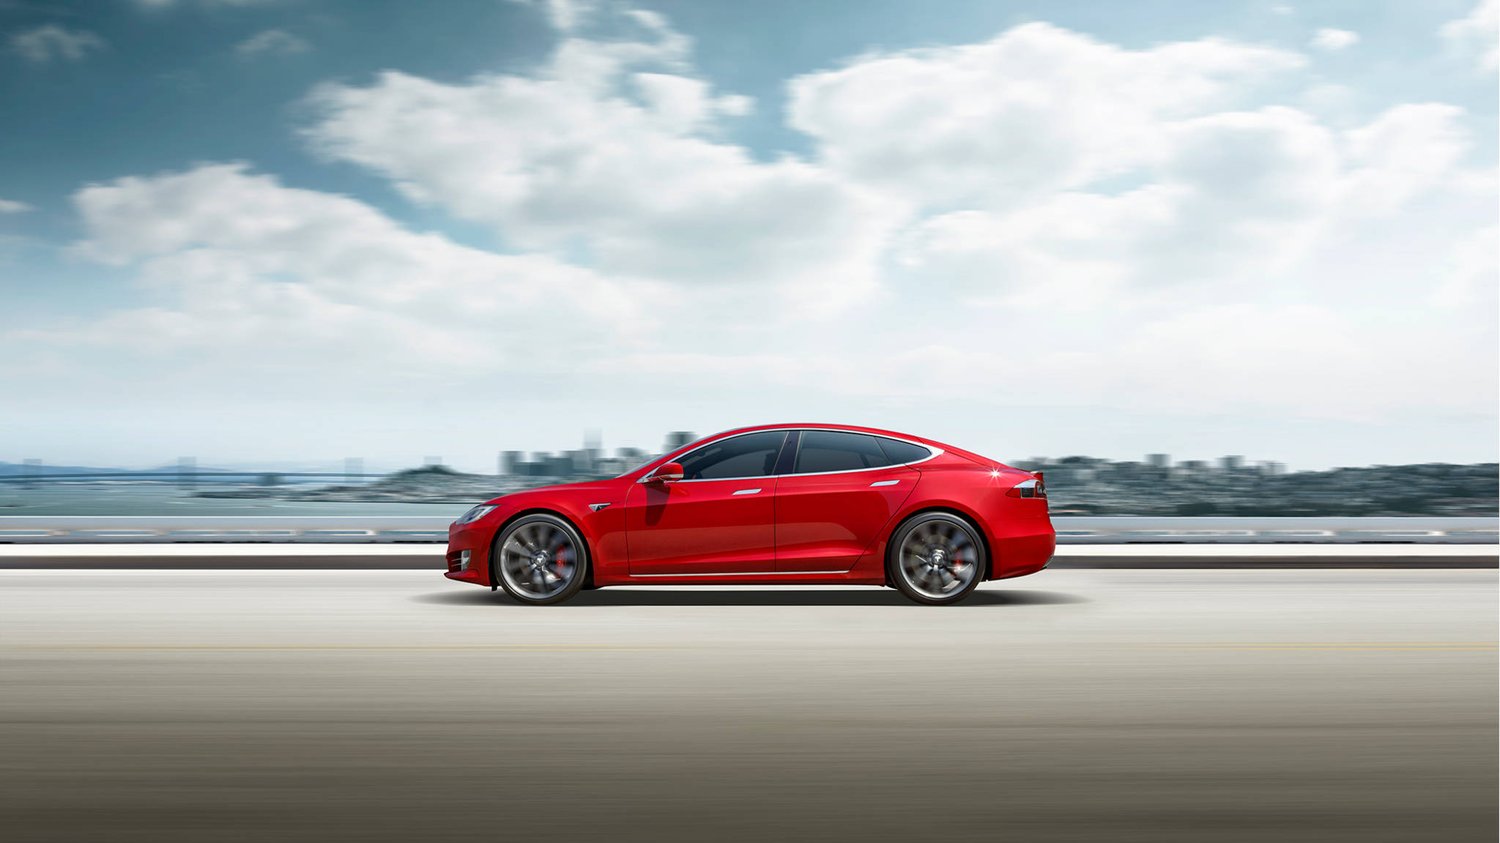 Red Tesla Model S car